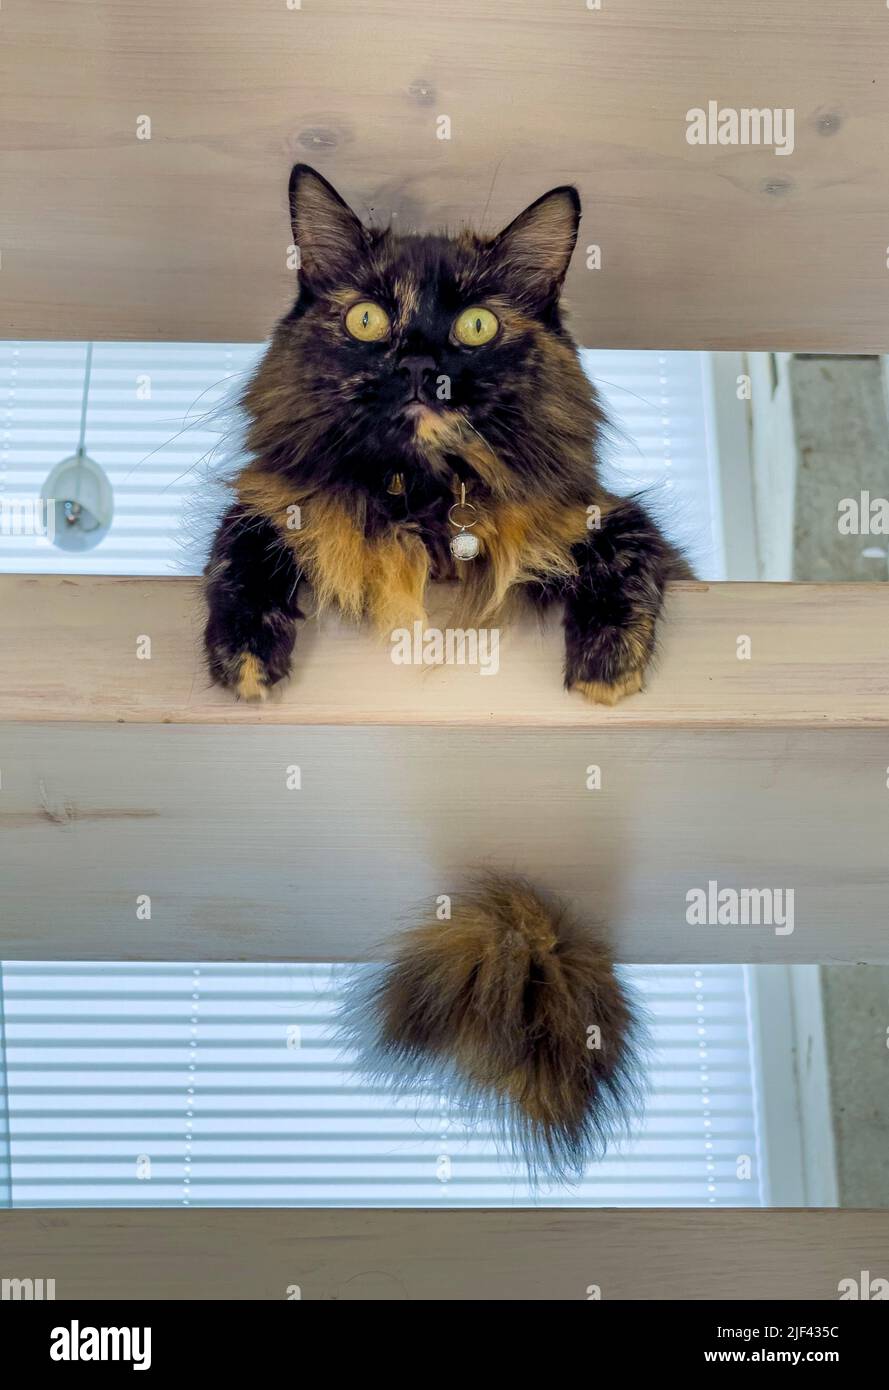 Tortoiseshell gatto a capelli lunghi seduto su una scala di legno a pedata aperta Foto Stock